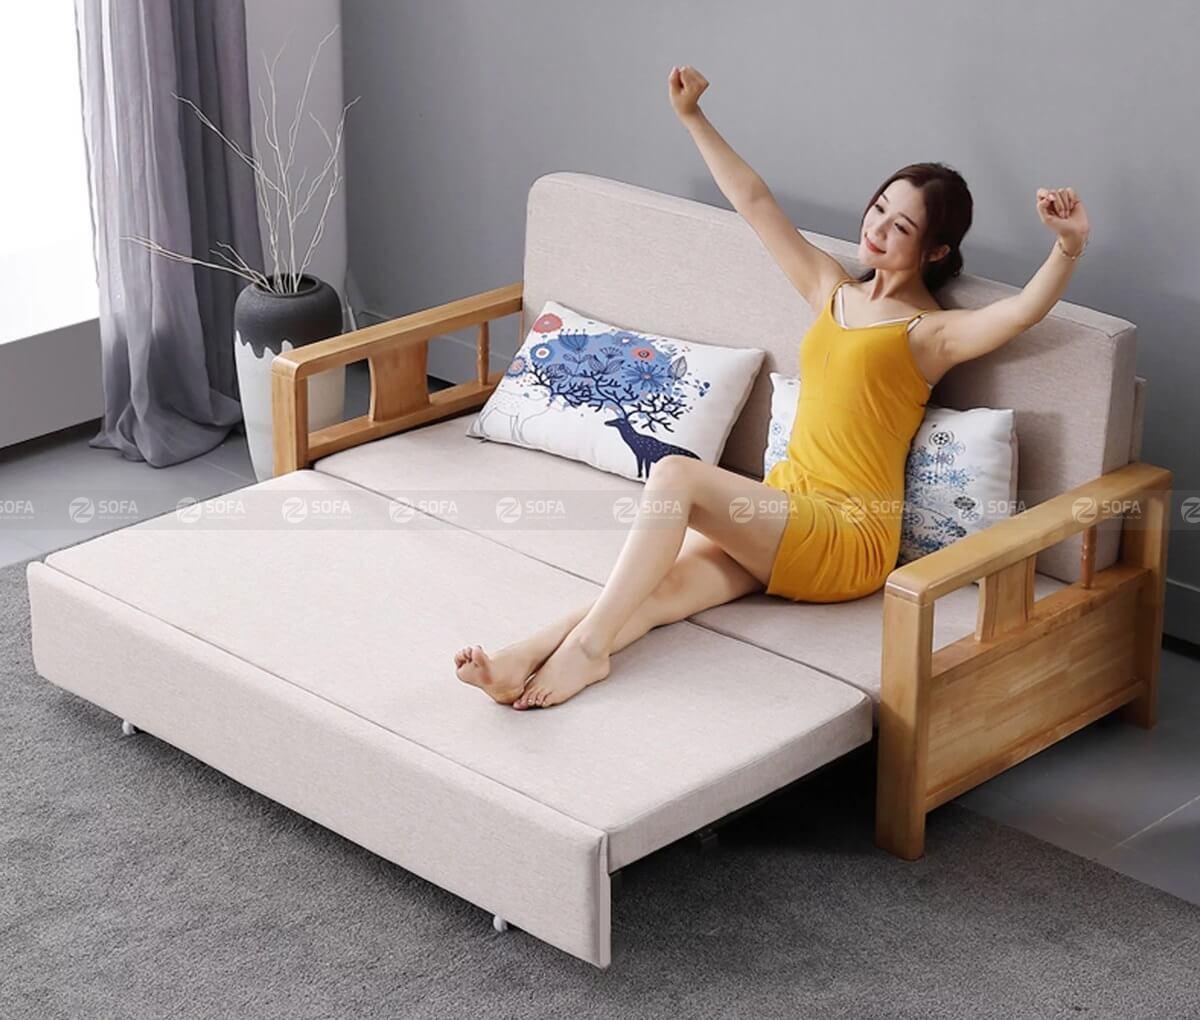 Nên mua ghế sofa bed ở đâu tốt nhất Sài Gòn?